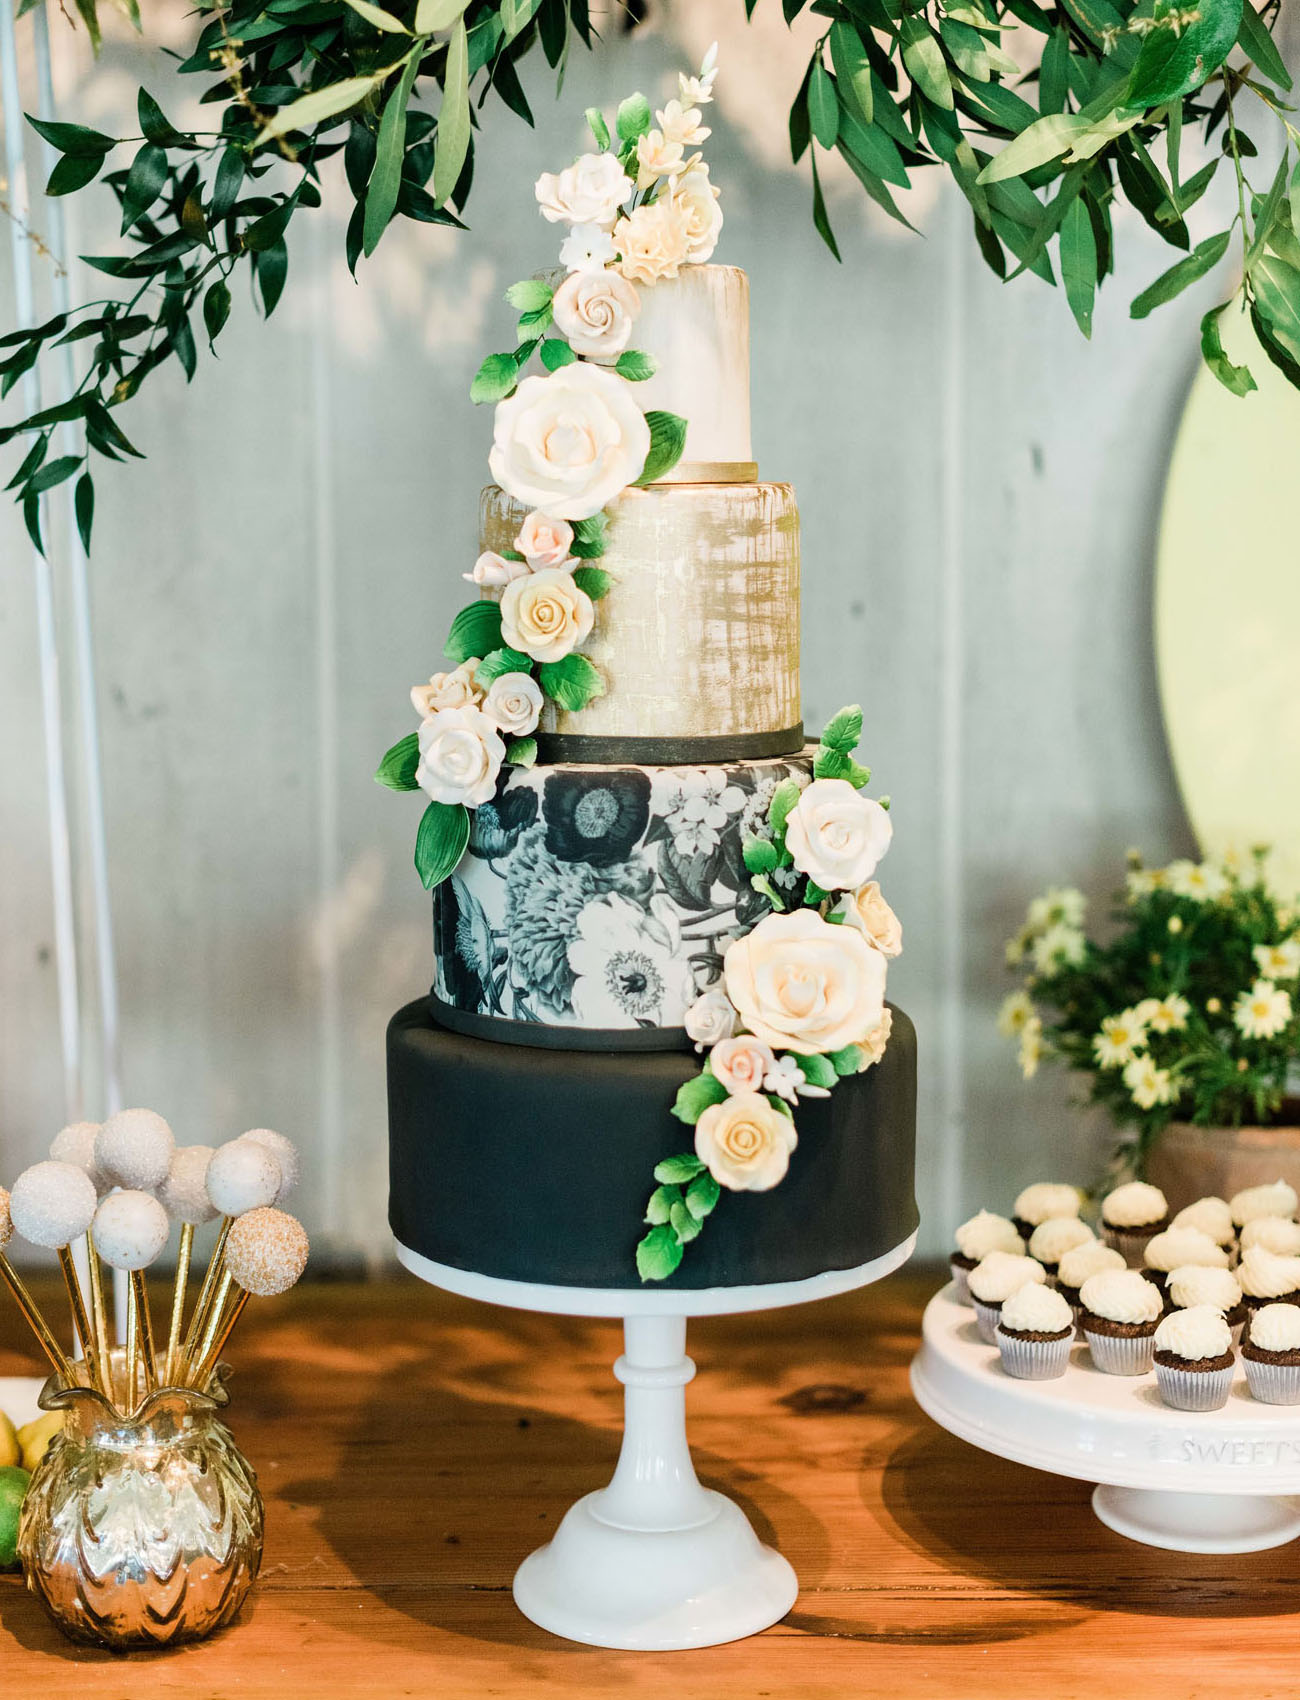 Inspiração para bolos de casamento de 4 andares | Créditos: Jillian Rose Photography